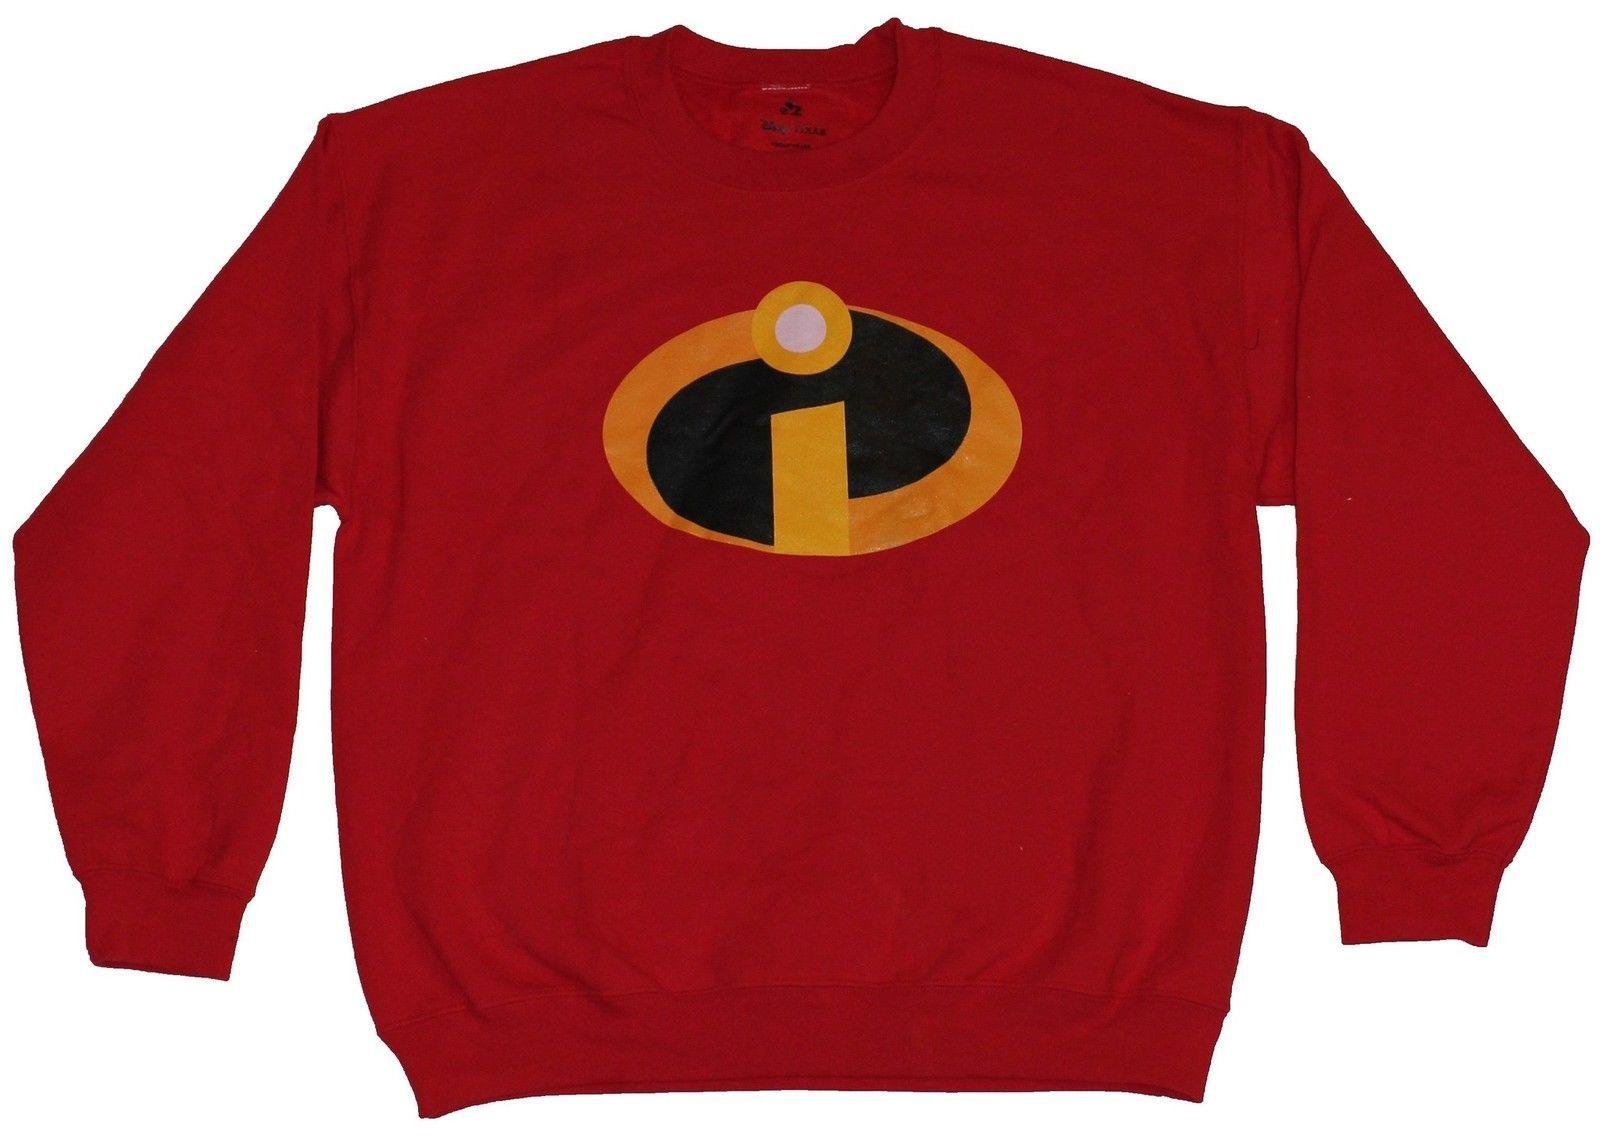 Yellow Swirl Logo - The Incredibles (Pixar) Mens Crewneck Sweatshirt - Yellow Swirl I ...